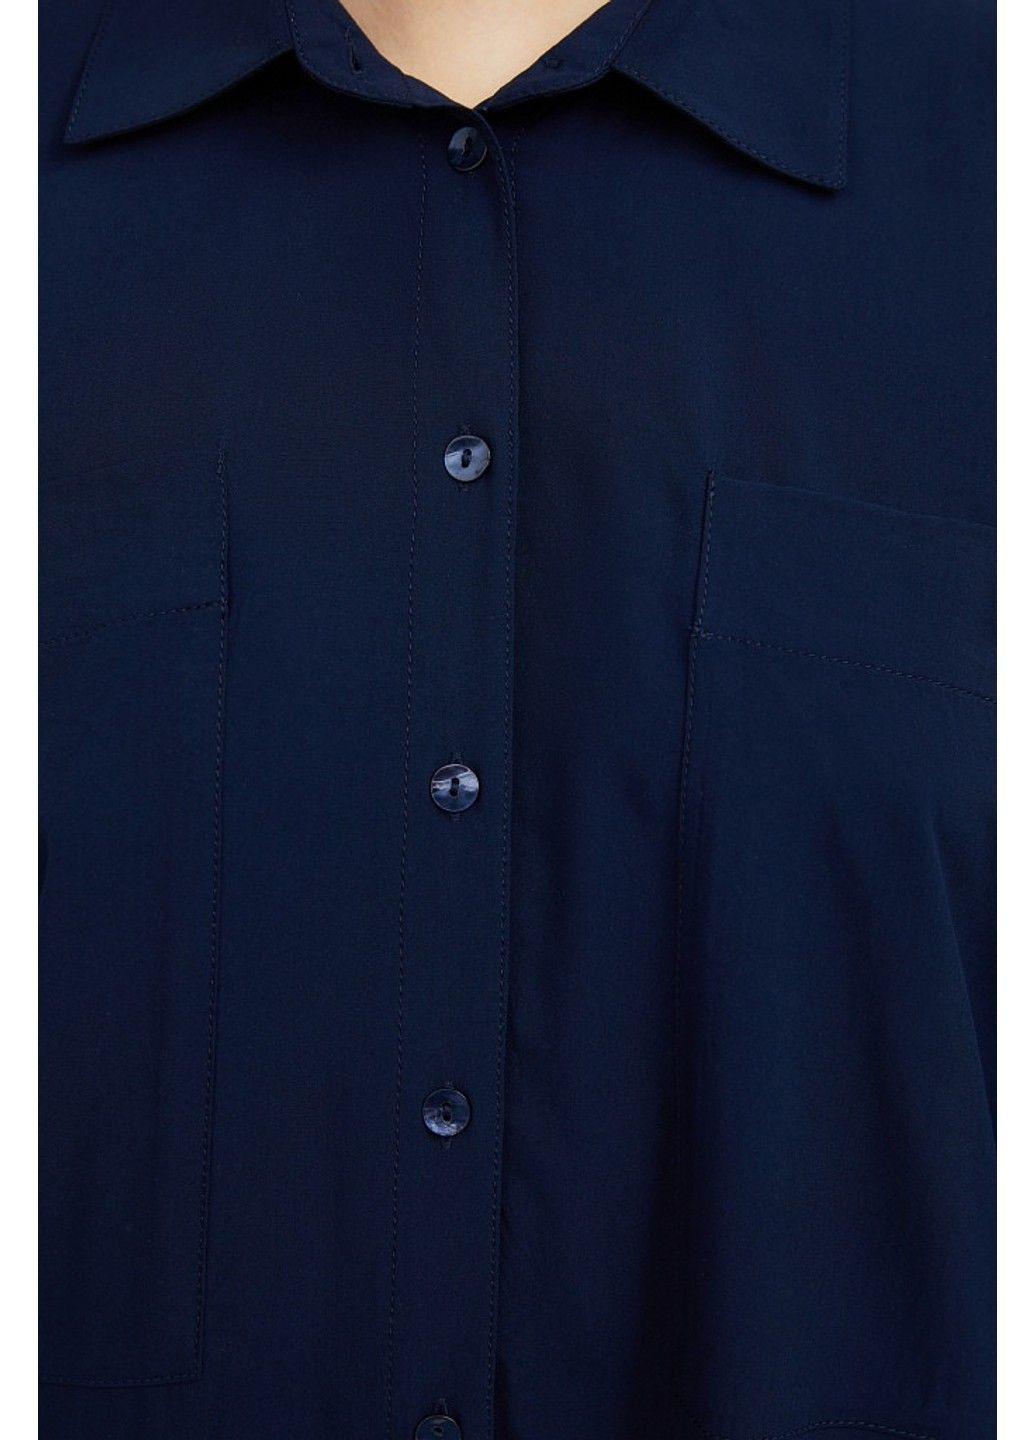 Синяя летняя рубашка s21-11076-101 Finn Flare